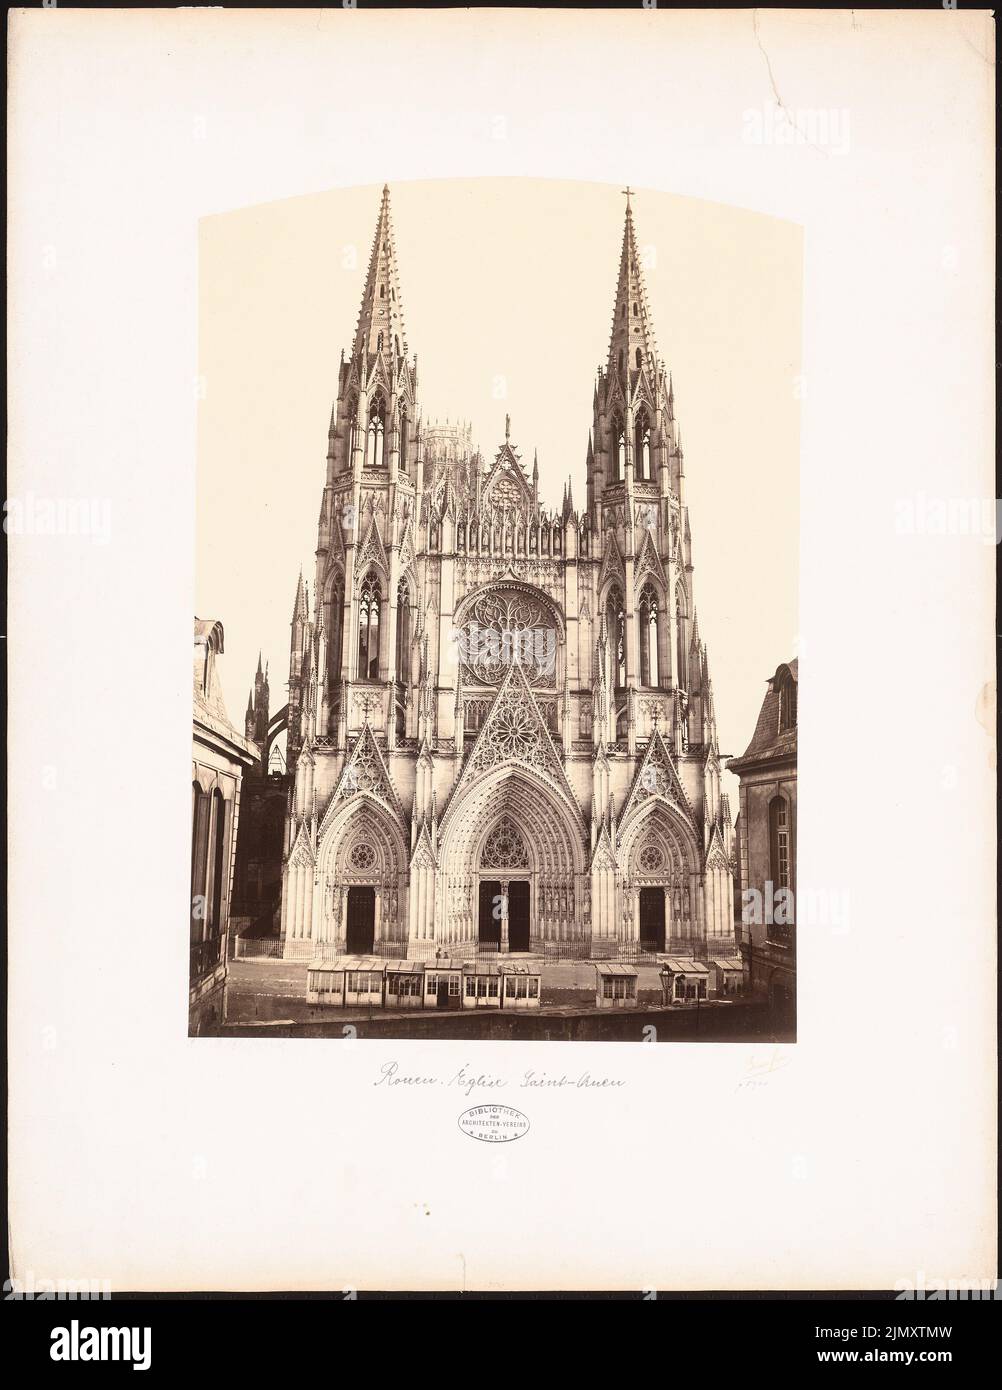 N.N., St. Ouen, Rouen (ohne dat.): Blick auf das Westportal der St. Ouen Kirche. Foto auf Papier, 72,3 x 55,8 cm (einschließlich Scankanten) Stockfoto